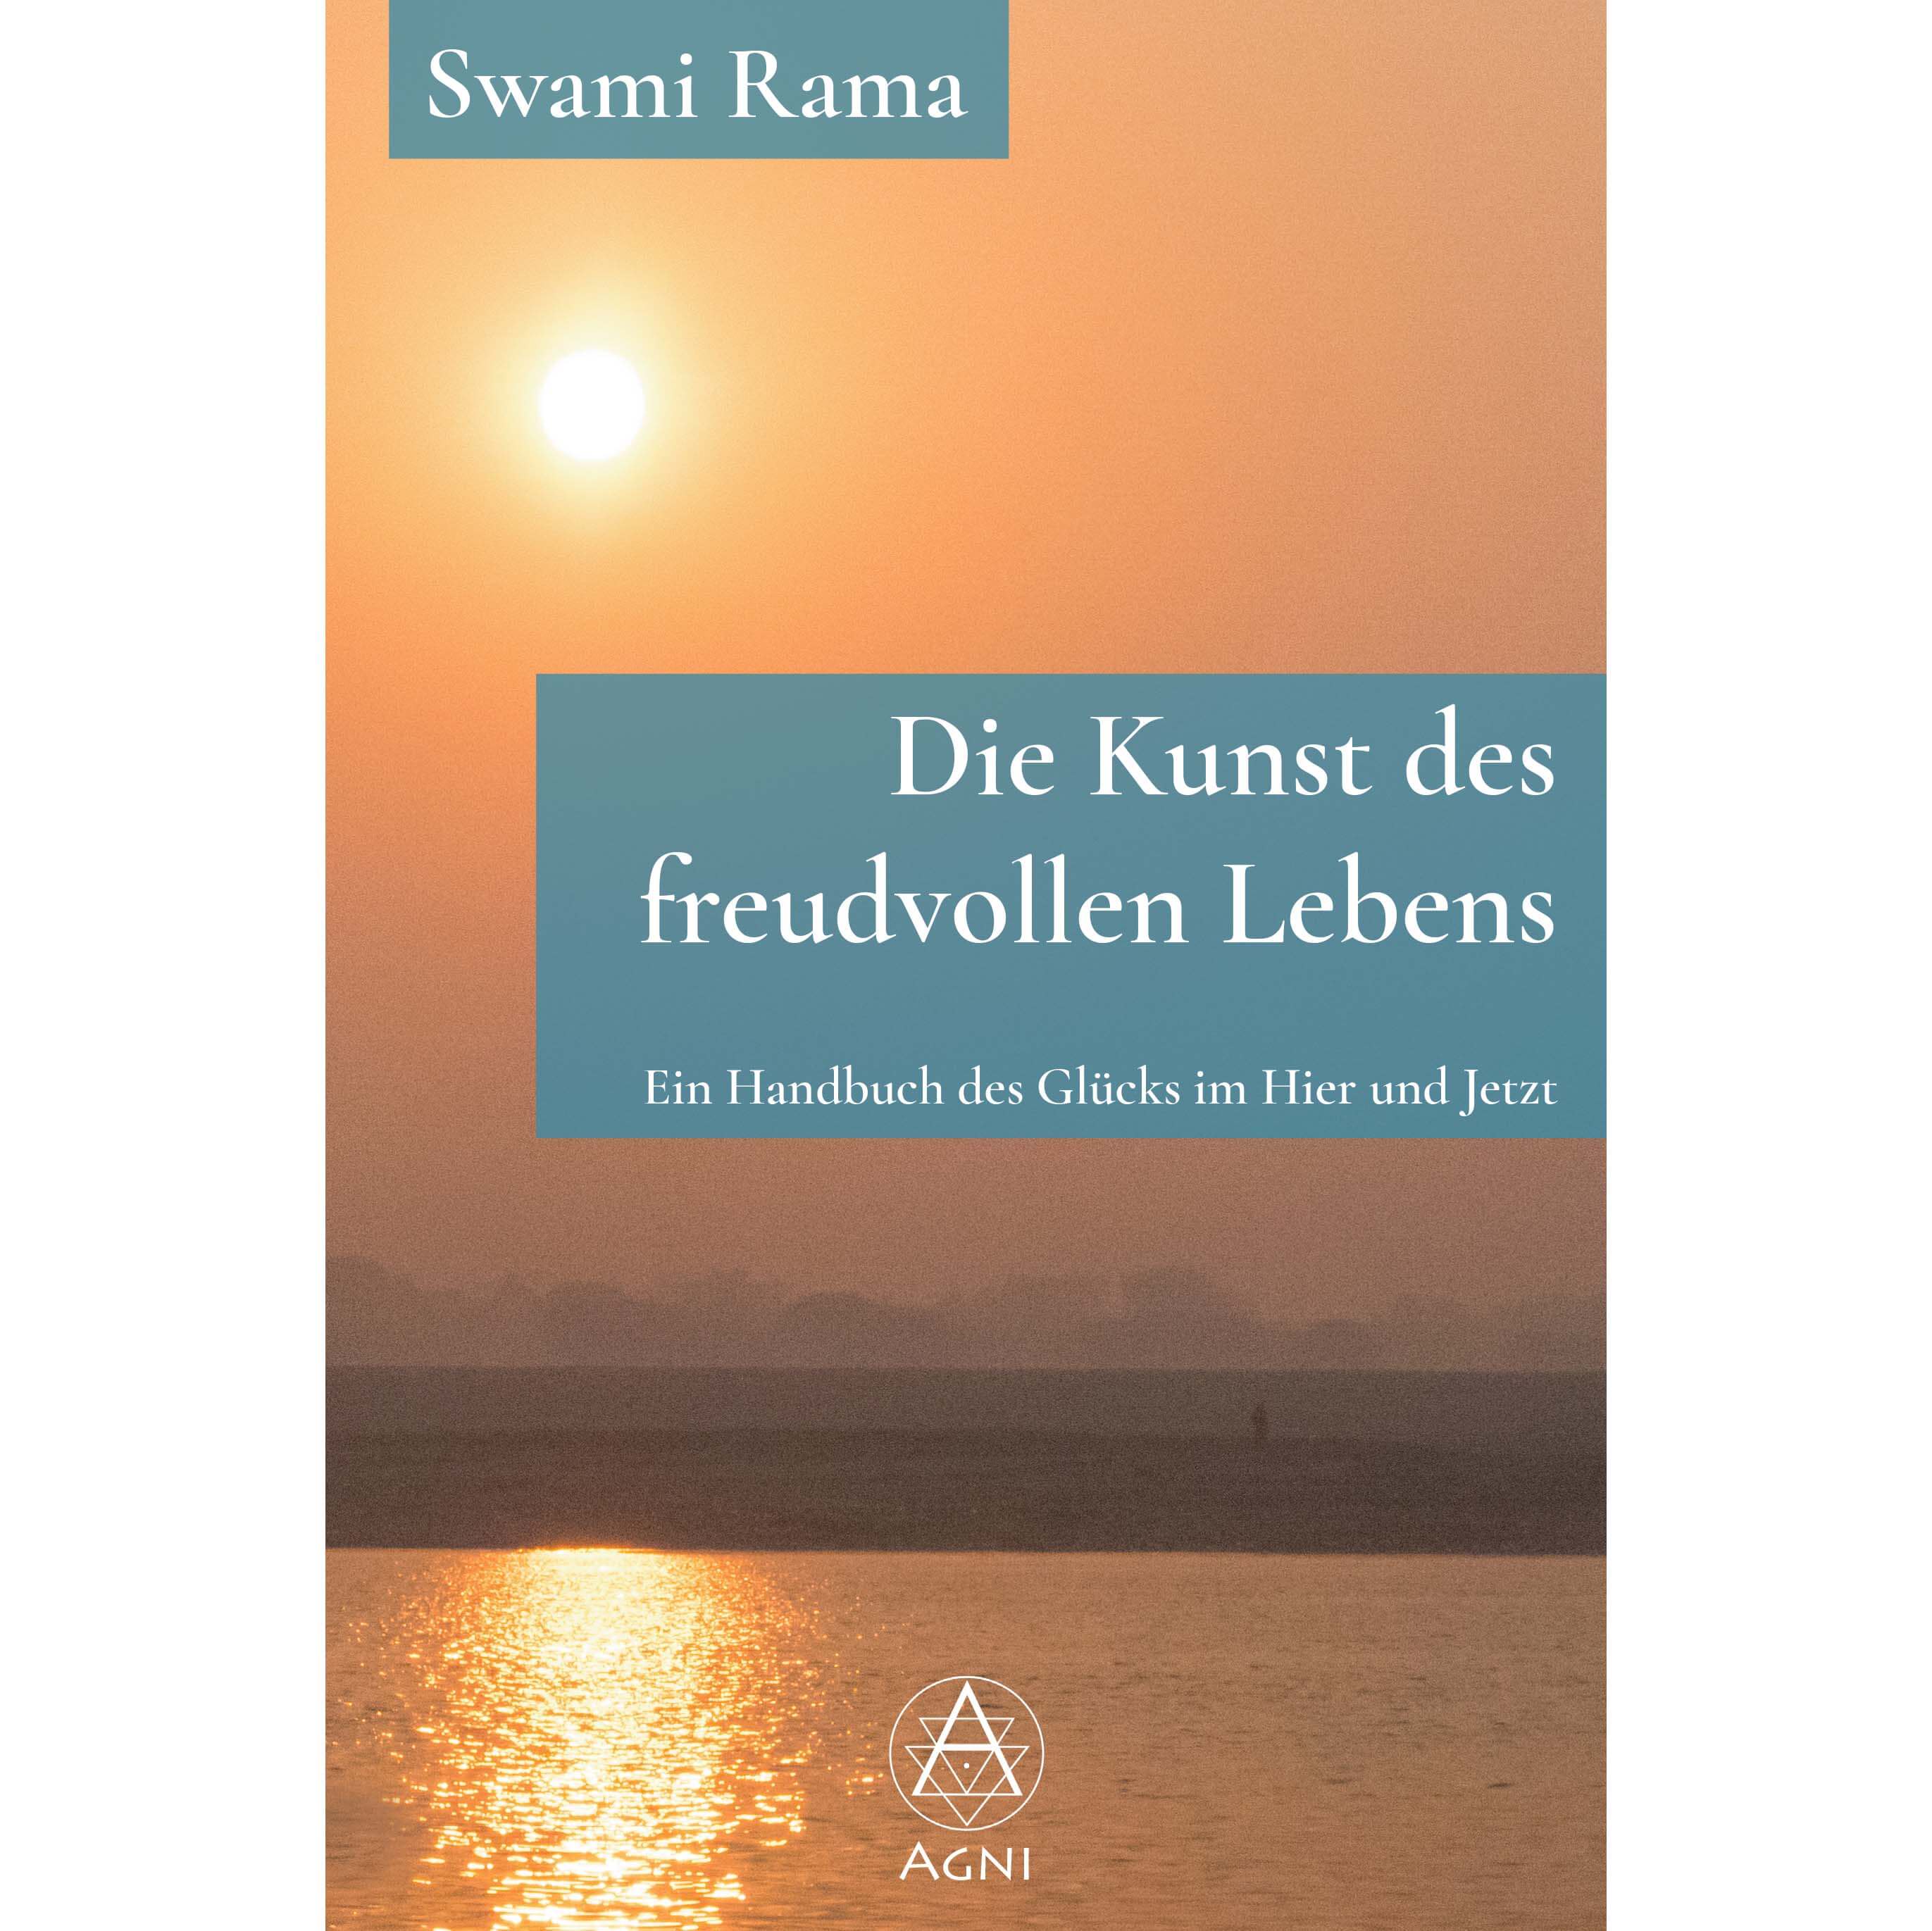 AV054 - Swami Rama: Die Kunst des freudvollen Lebens (Cover)